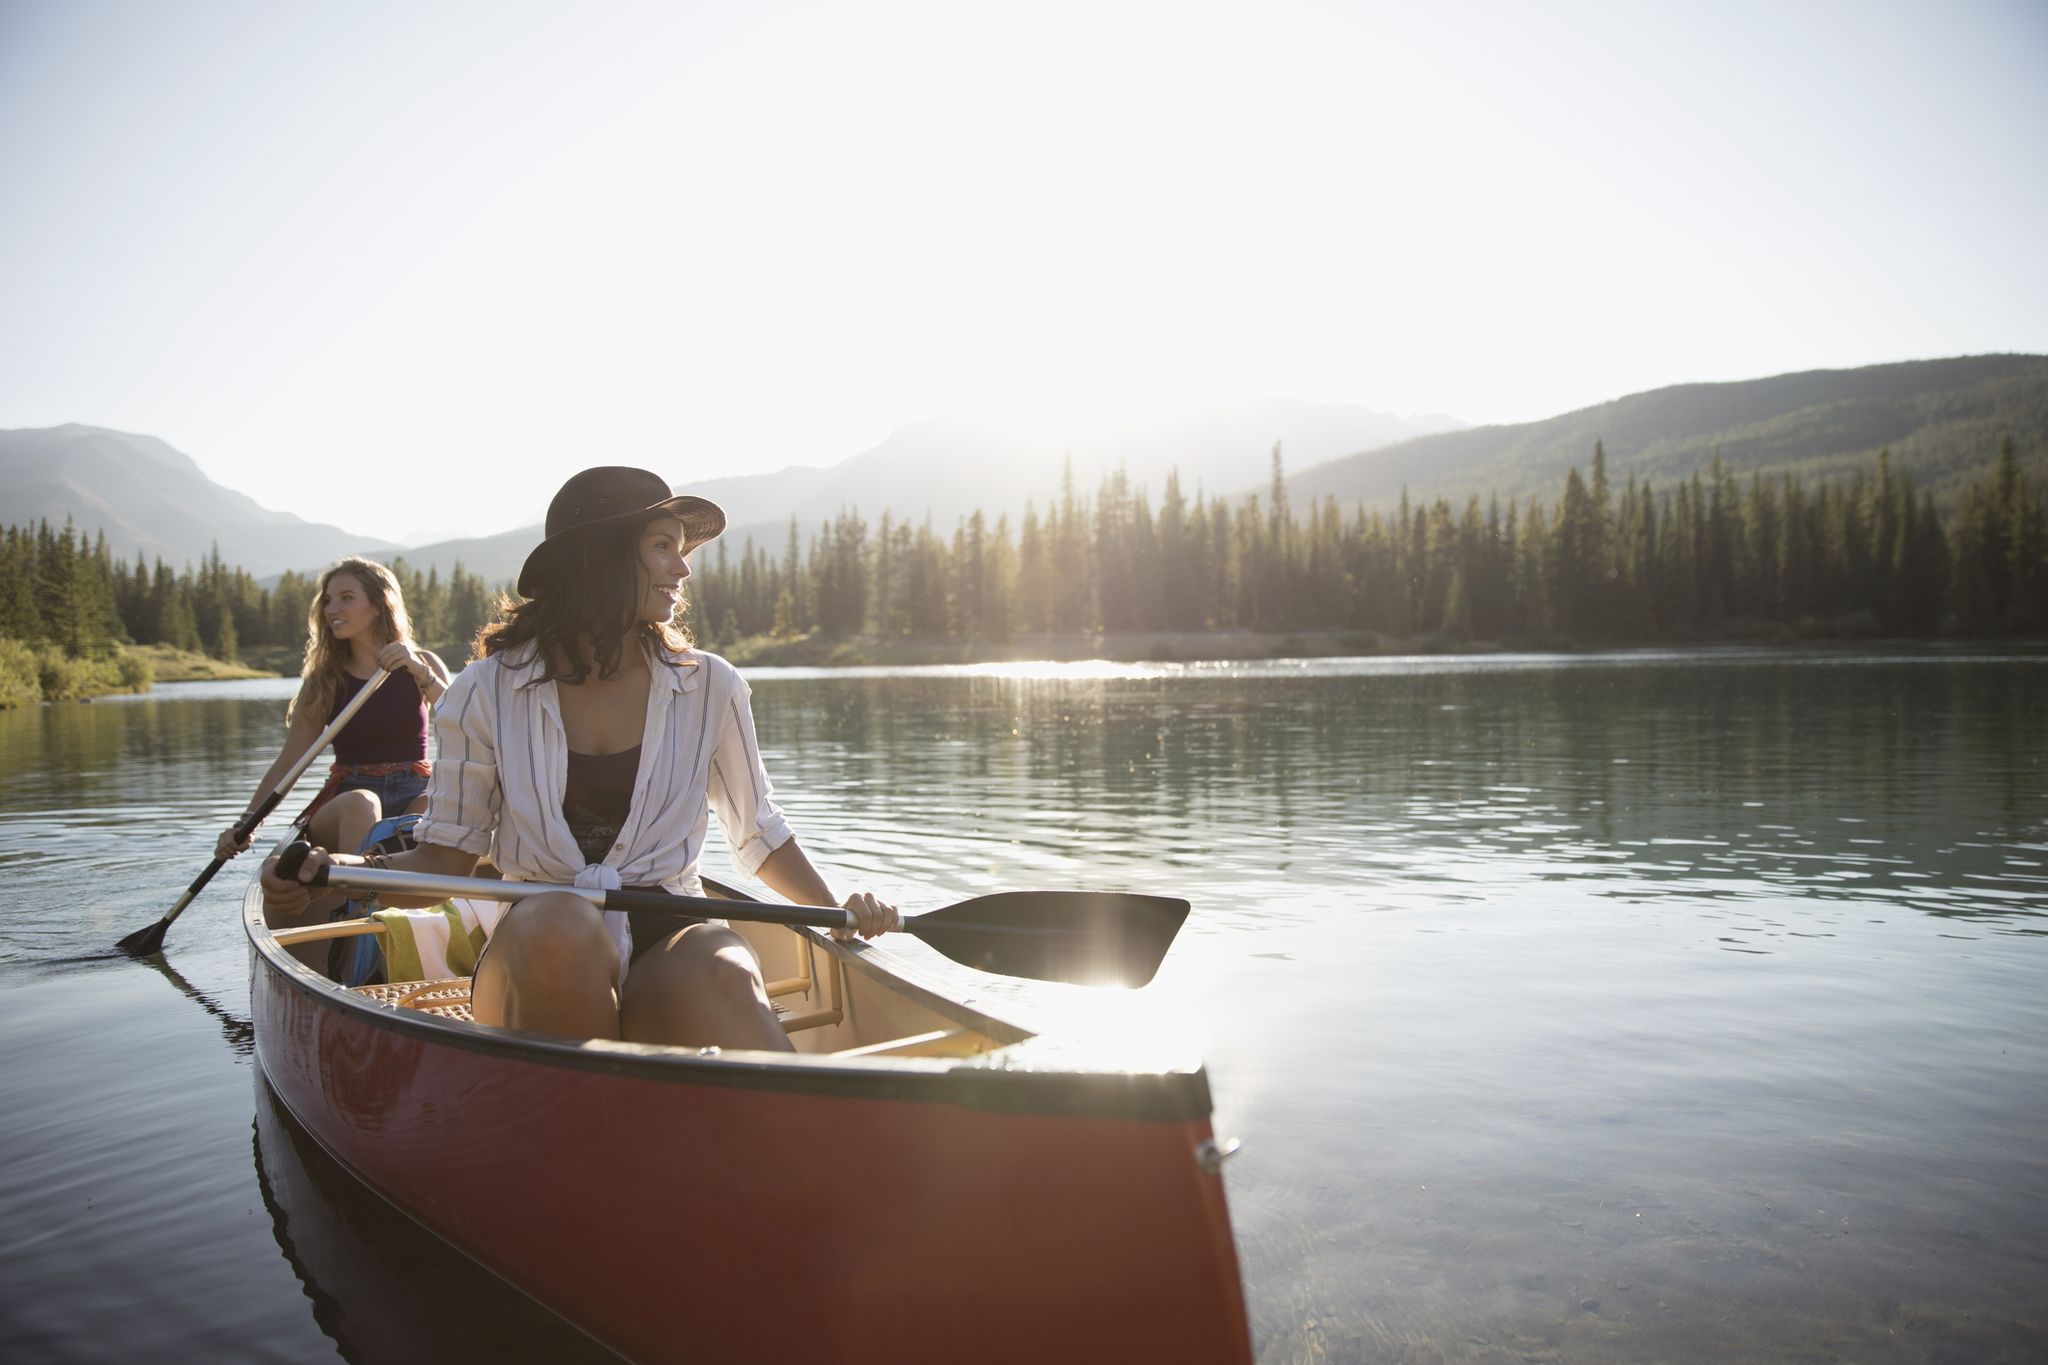 Water transportation, Boating, Canoe, Canoeing, Boat, Watercraft rowing, Vehicle, Sky, Reflection, Lake, 